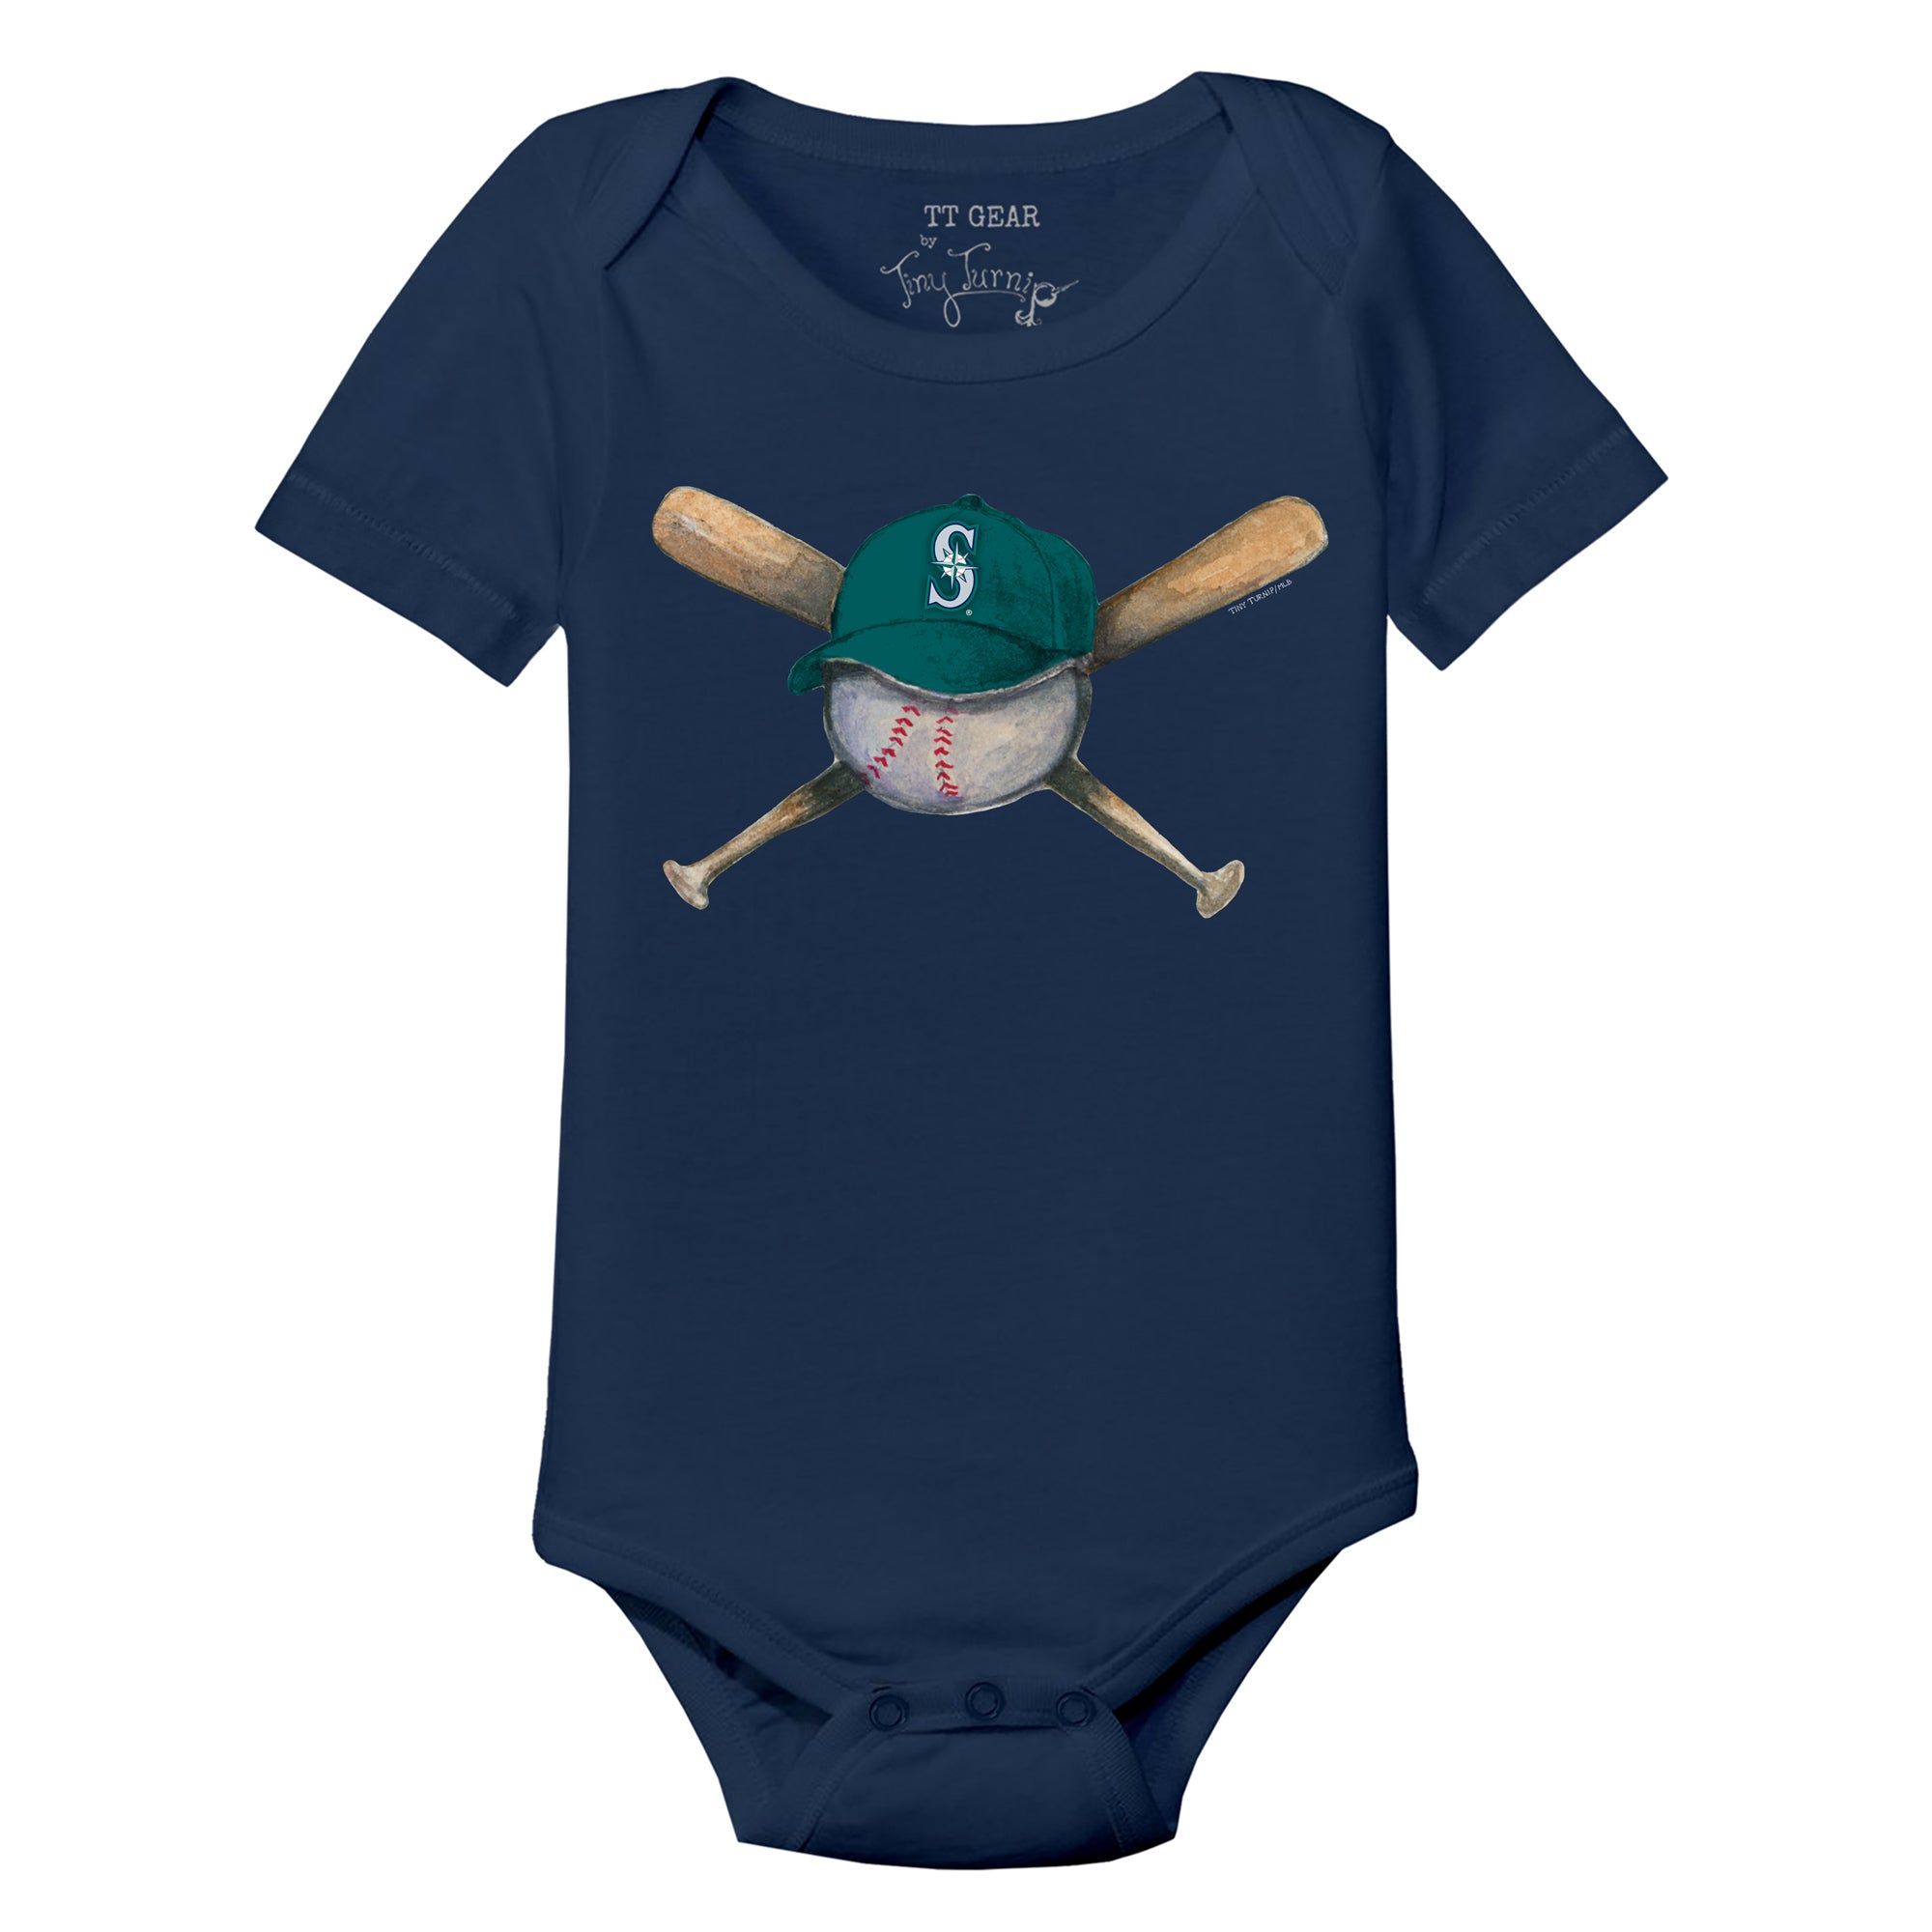 Youth Tiny Turnip Navy Atlanta Braves Baseball Cross Bats T-Shirt Size: Small